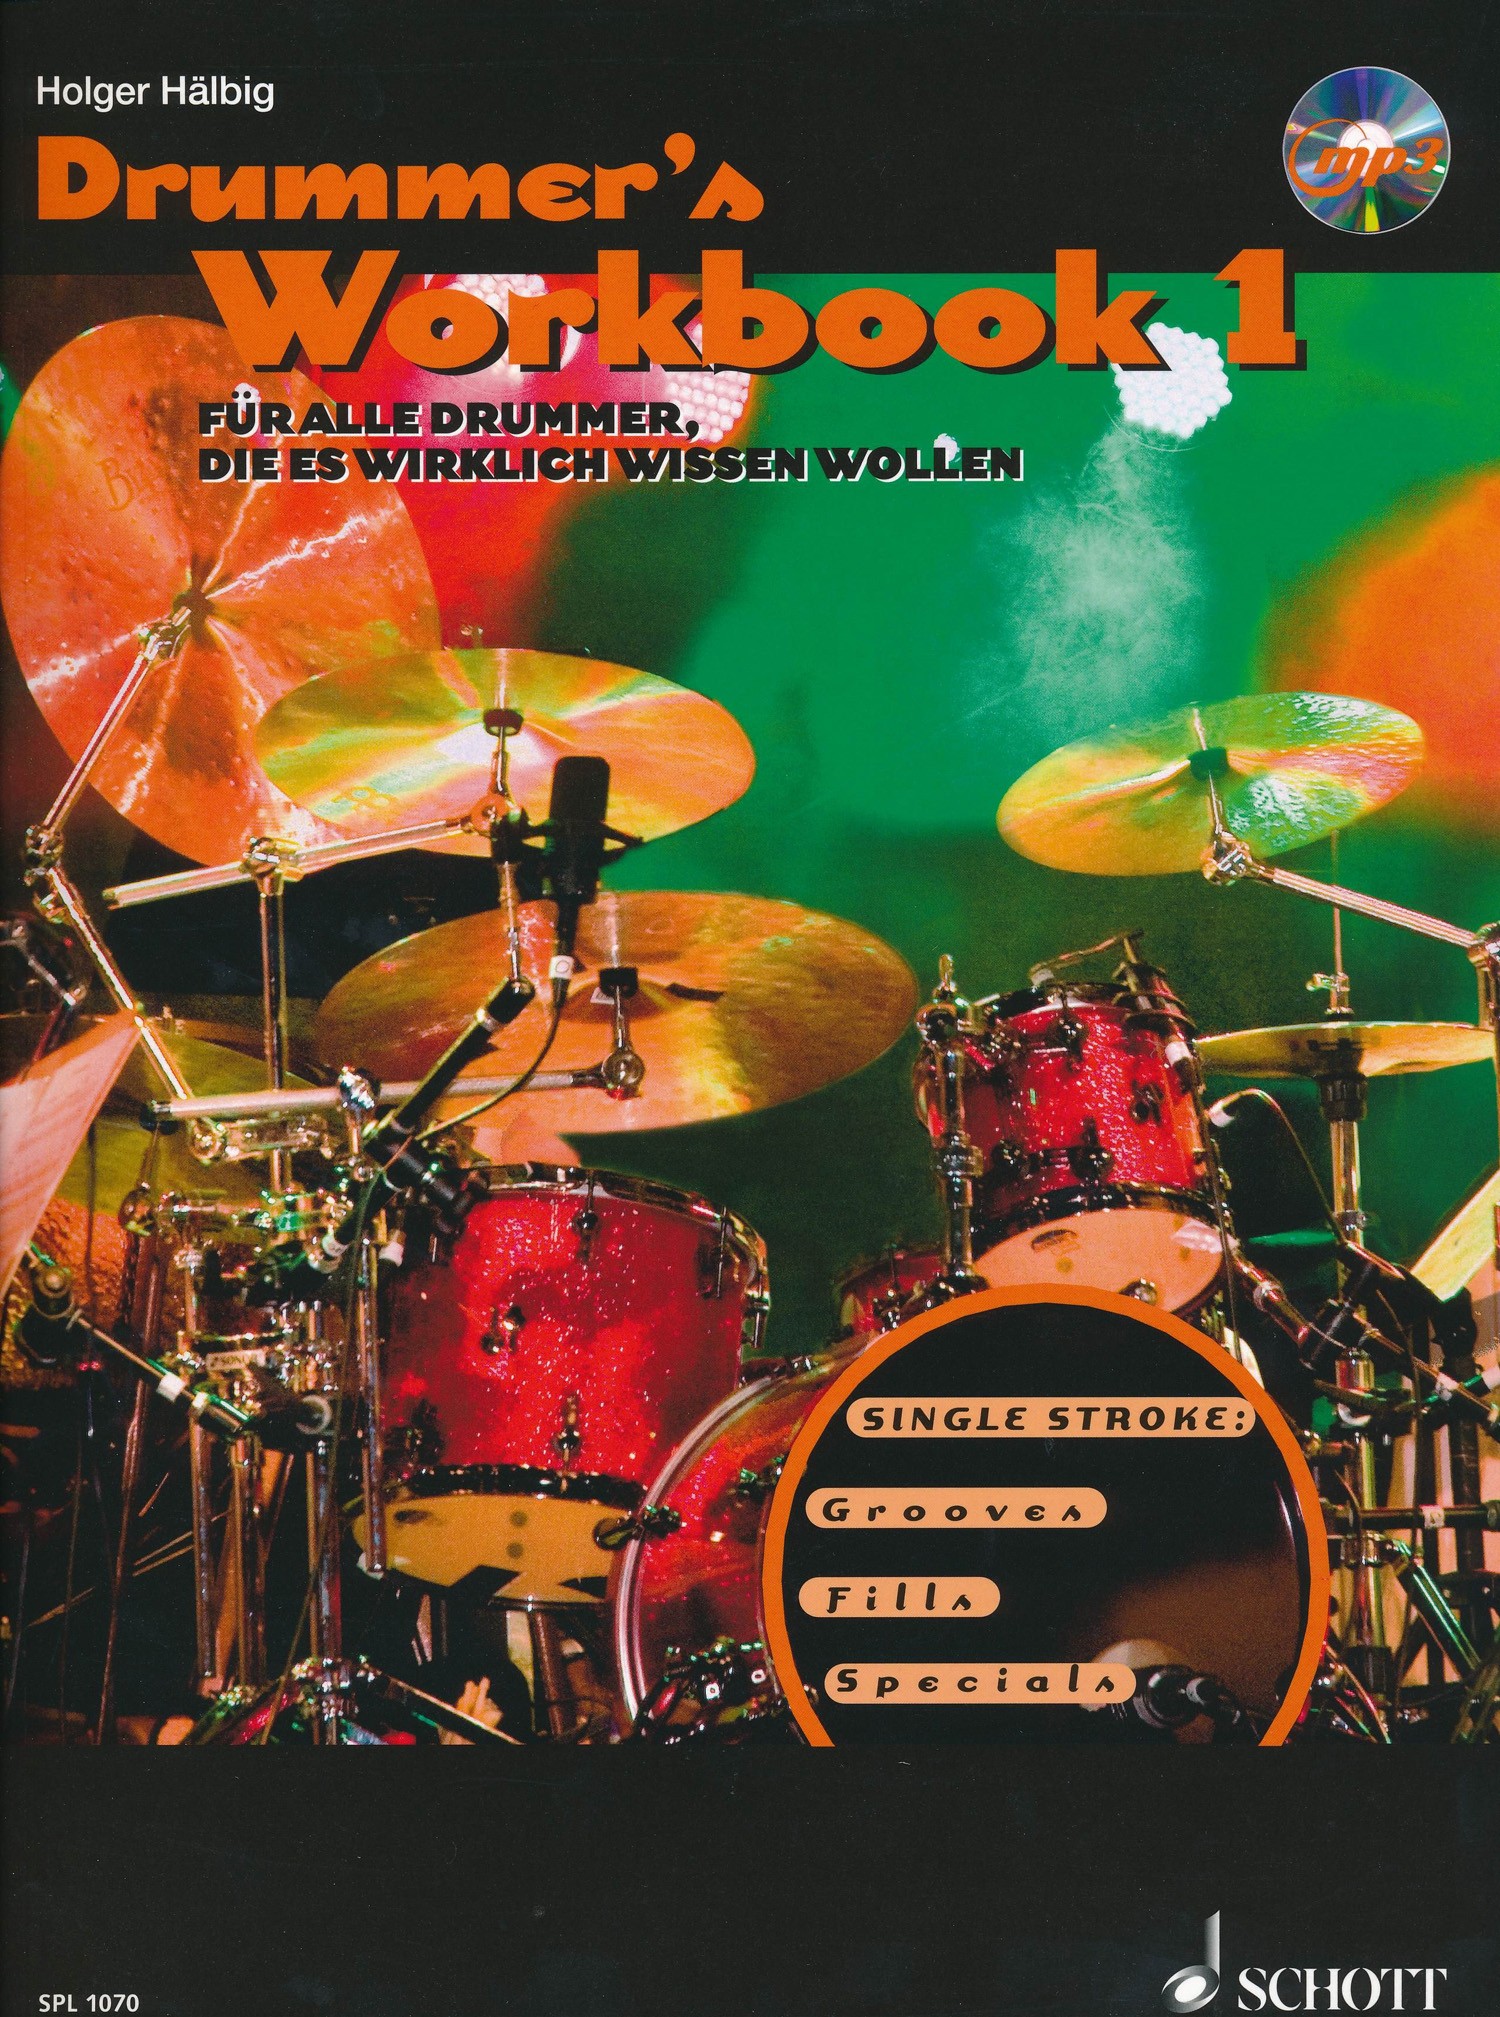 Drummer's Workbook 1 (German)